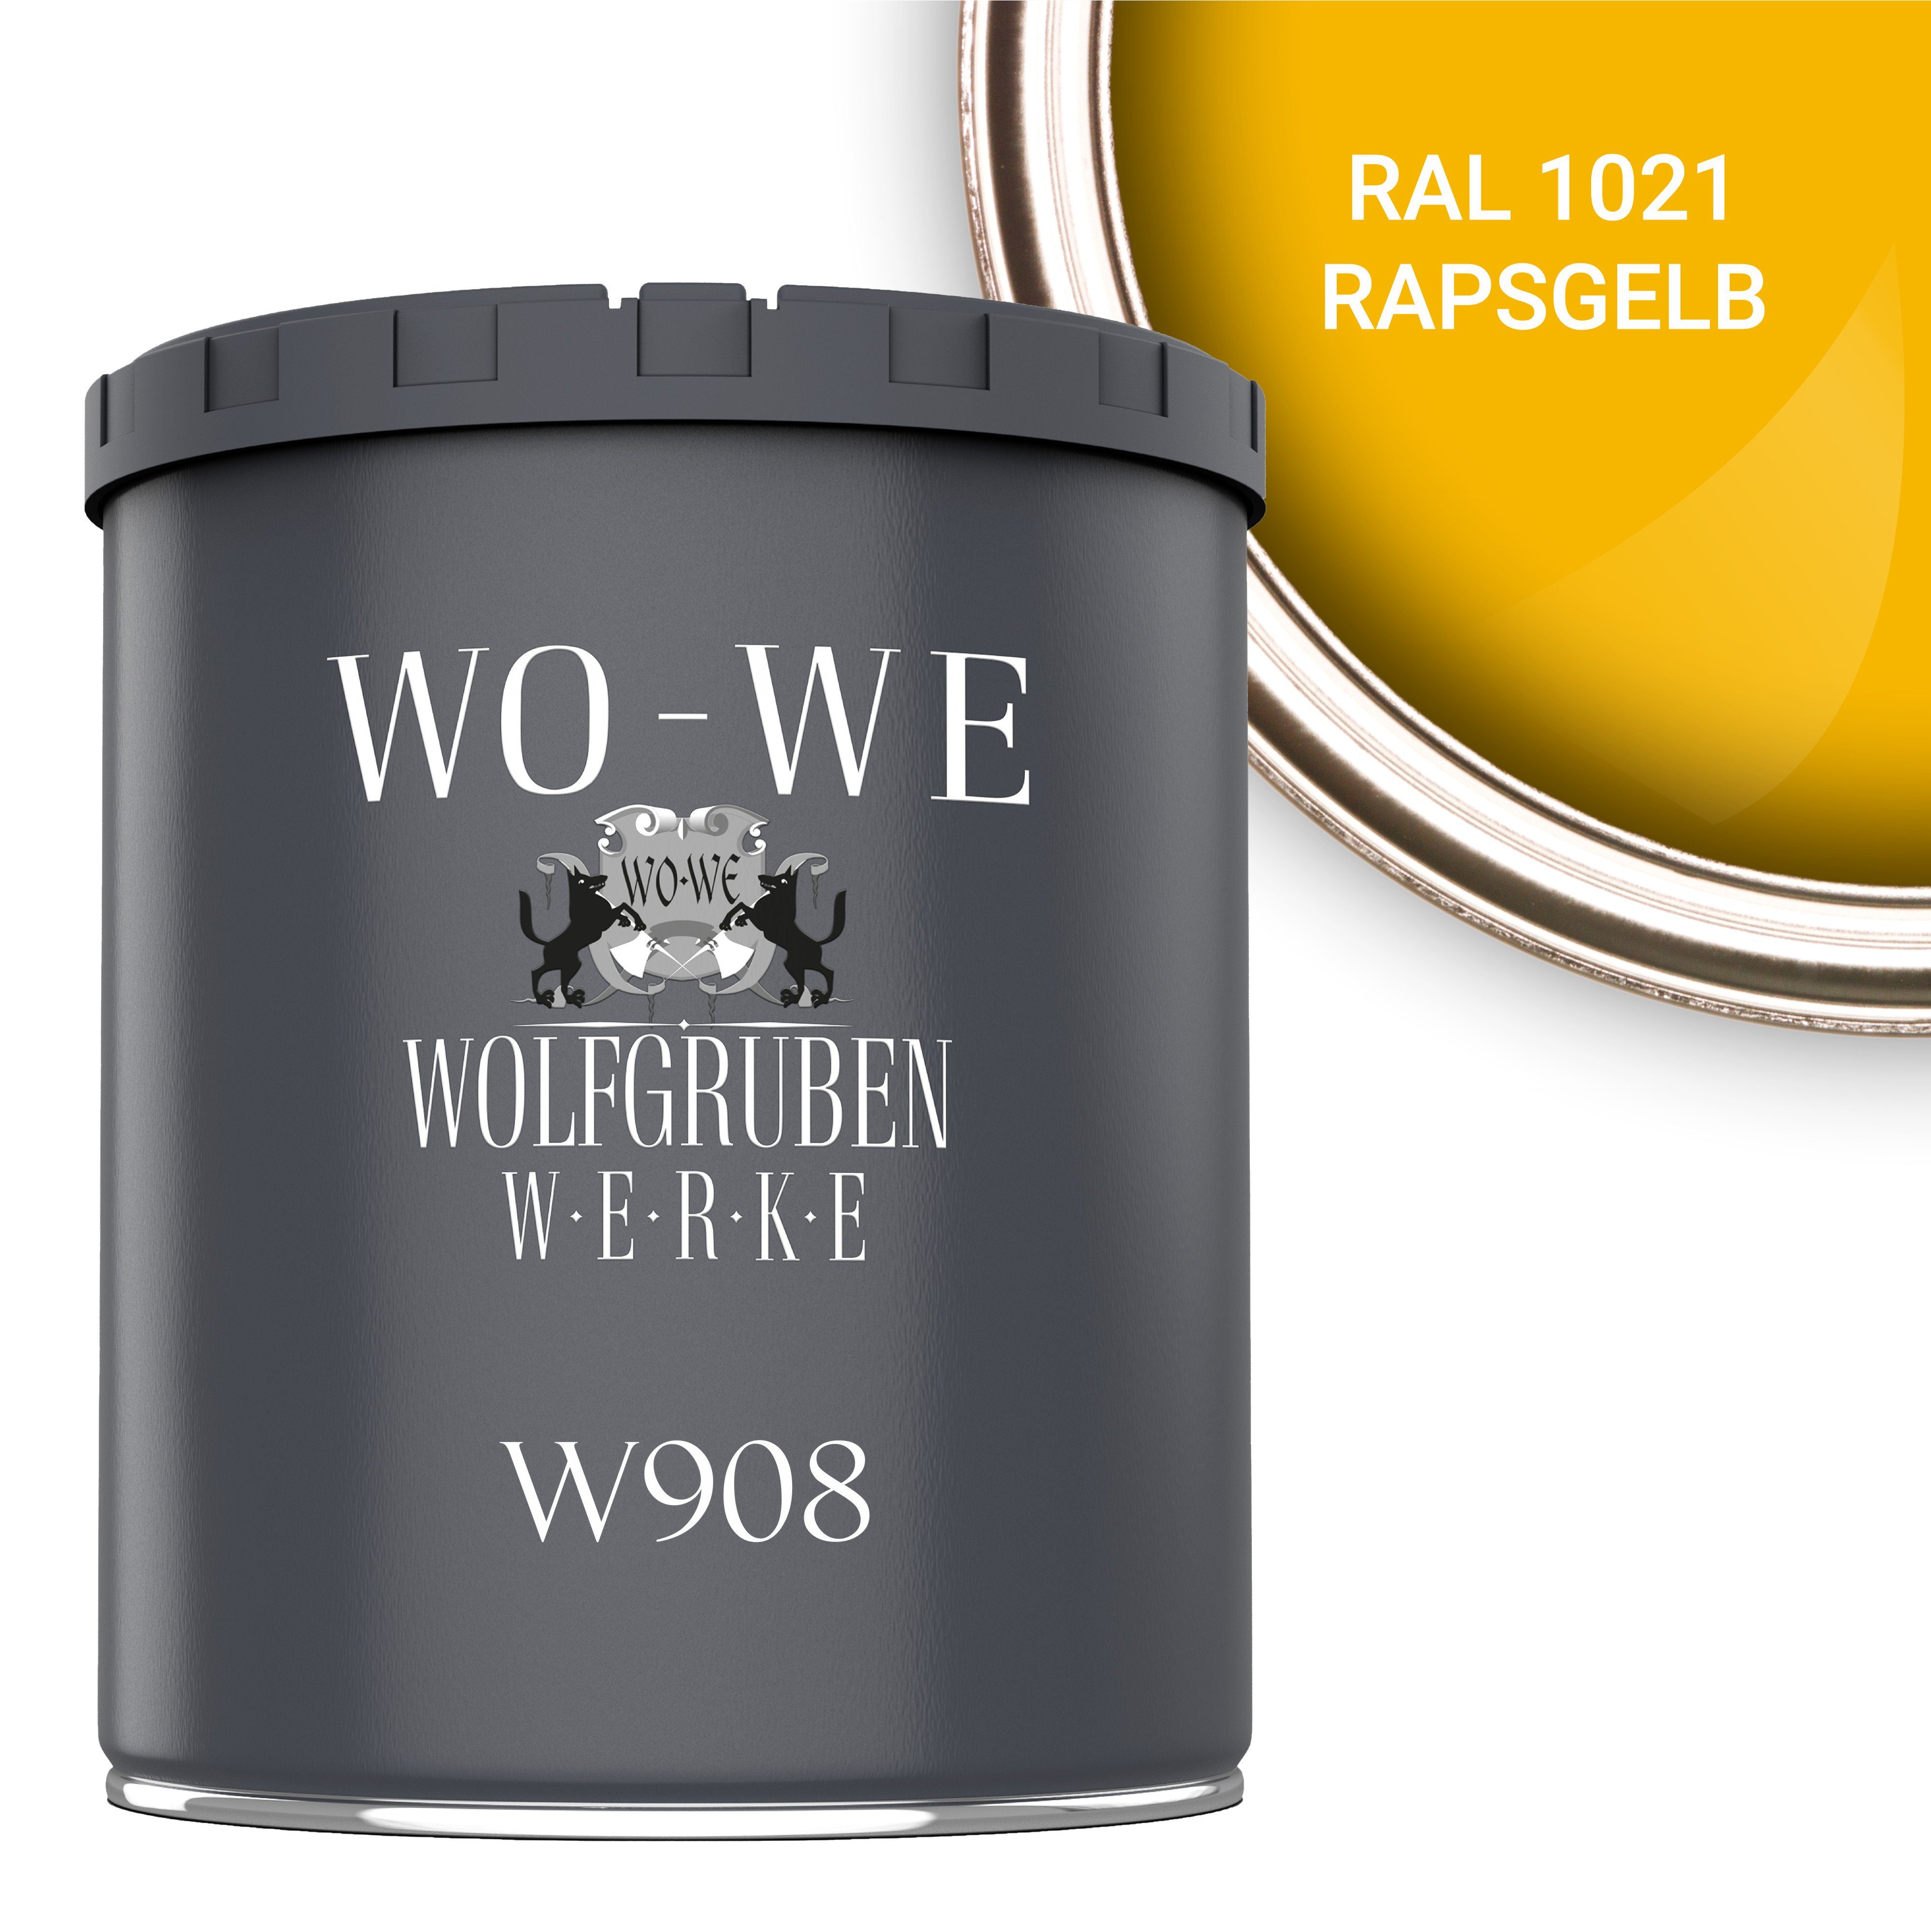 WO-WE Metallschutzlack 4in1 Metalllack Metallfarbe Metallschutzfarbe W908, 1L - 2,5L, Außenbereich RAL 1021 Rapsgelb